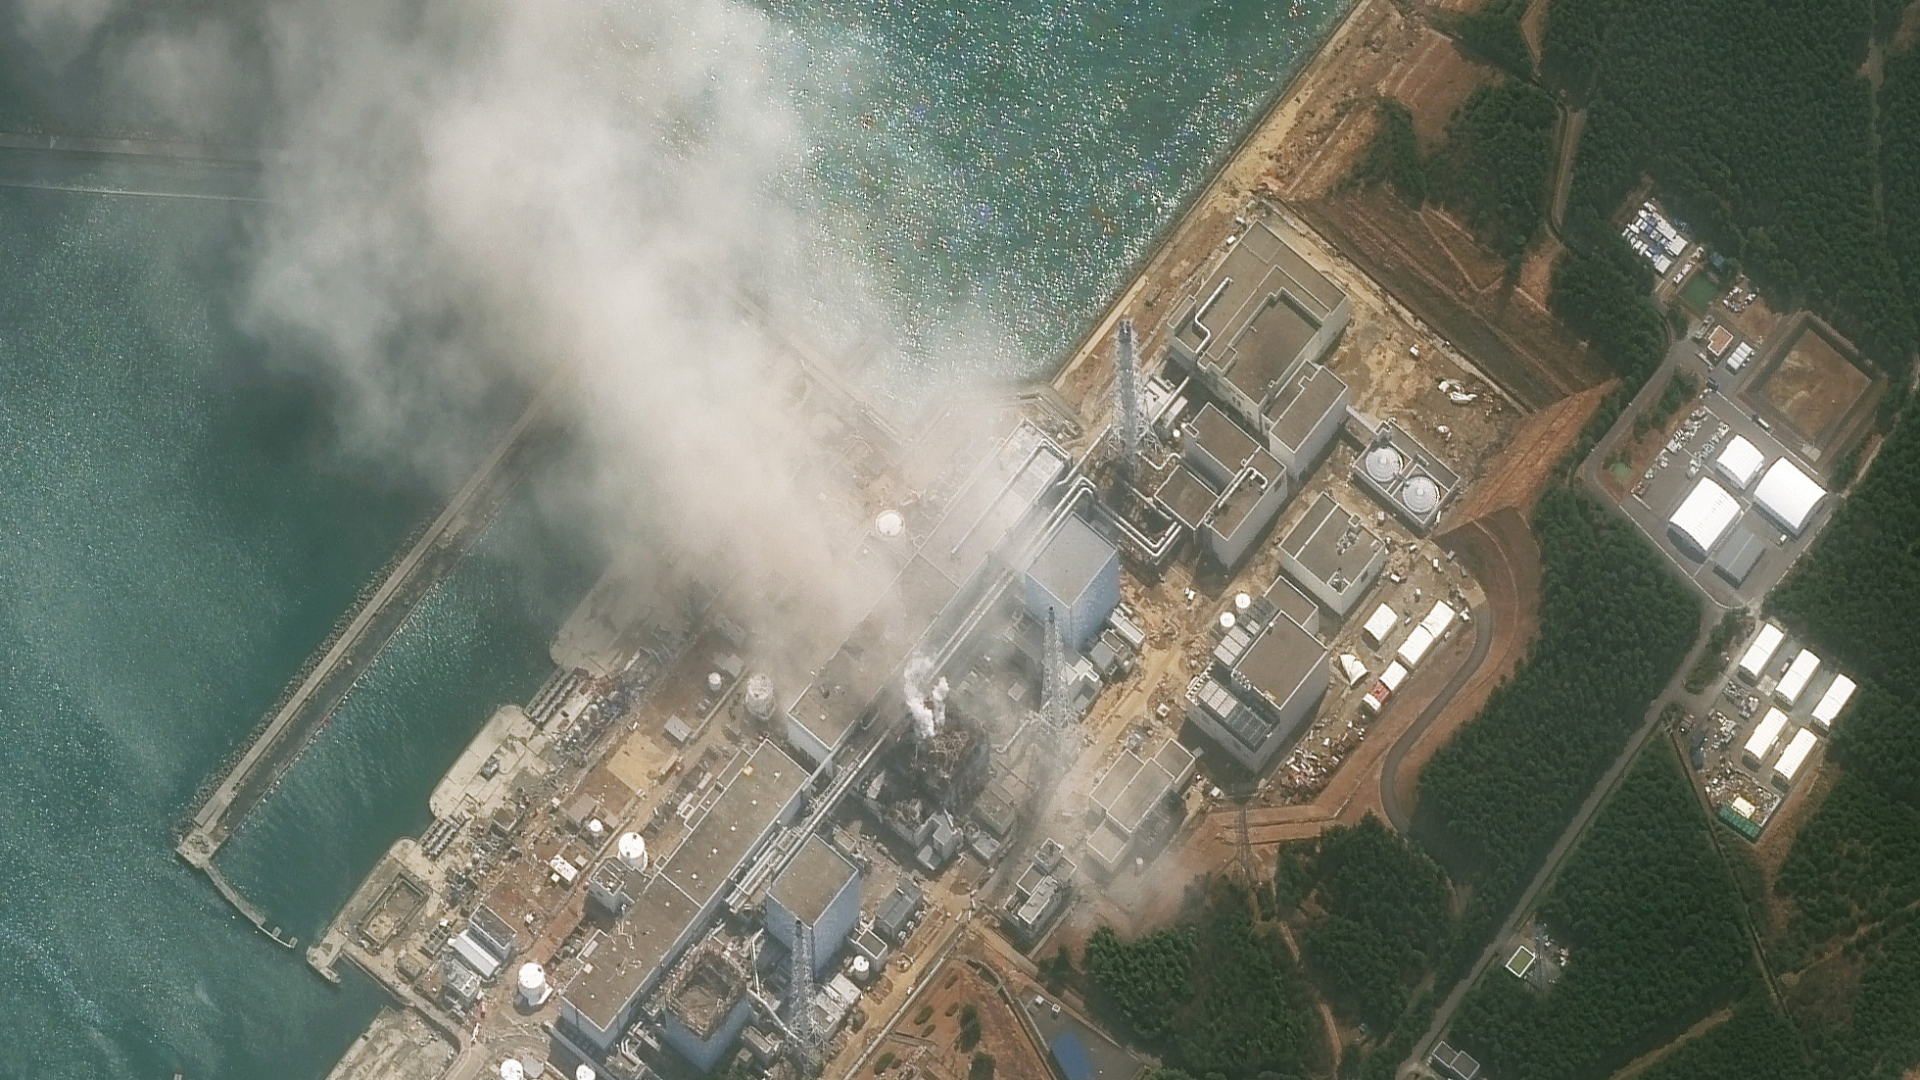 Satelittenaufnahme des brennenden Reaktors von Fukushima im März 2011